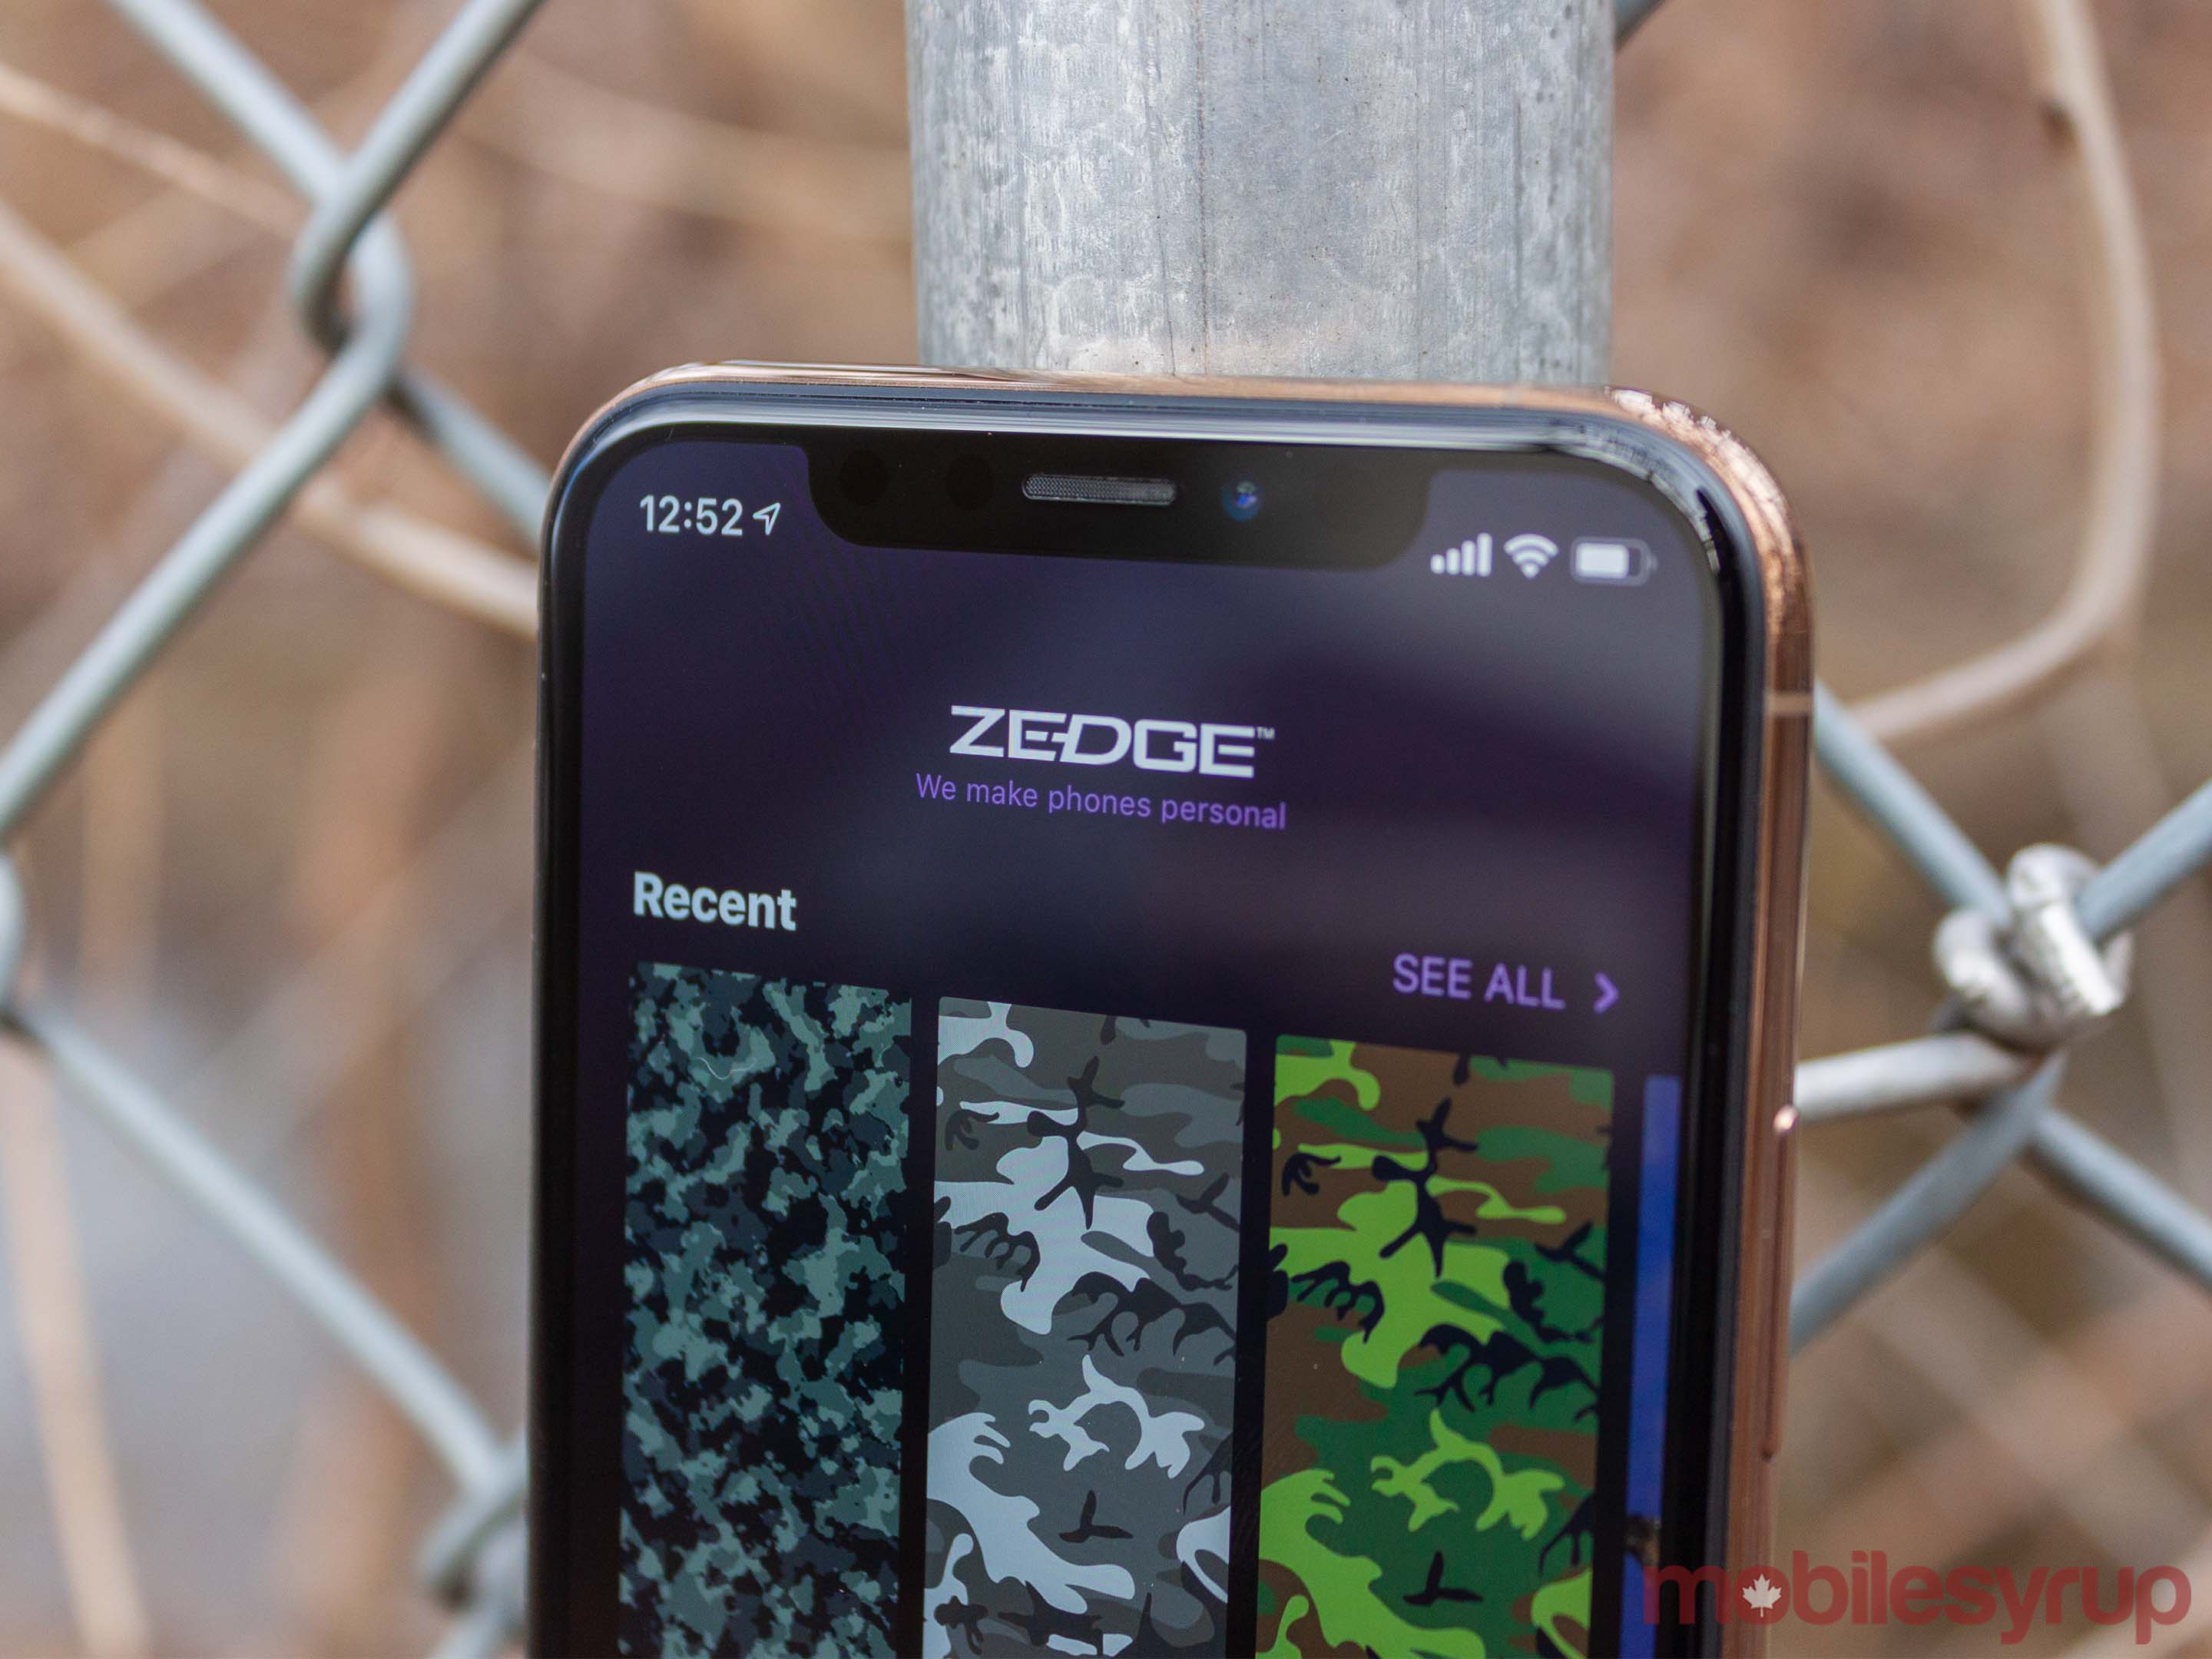 Zedge app on iPhone